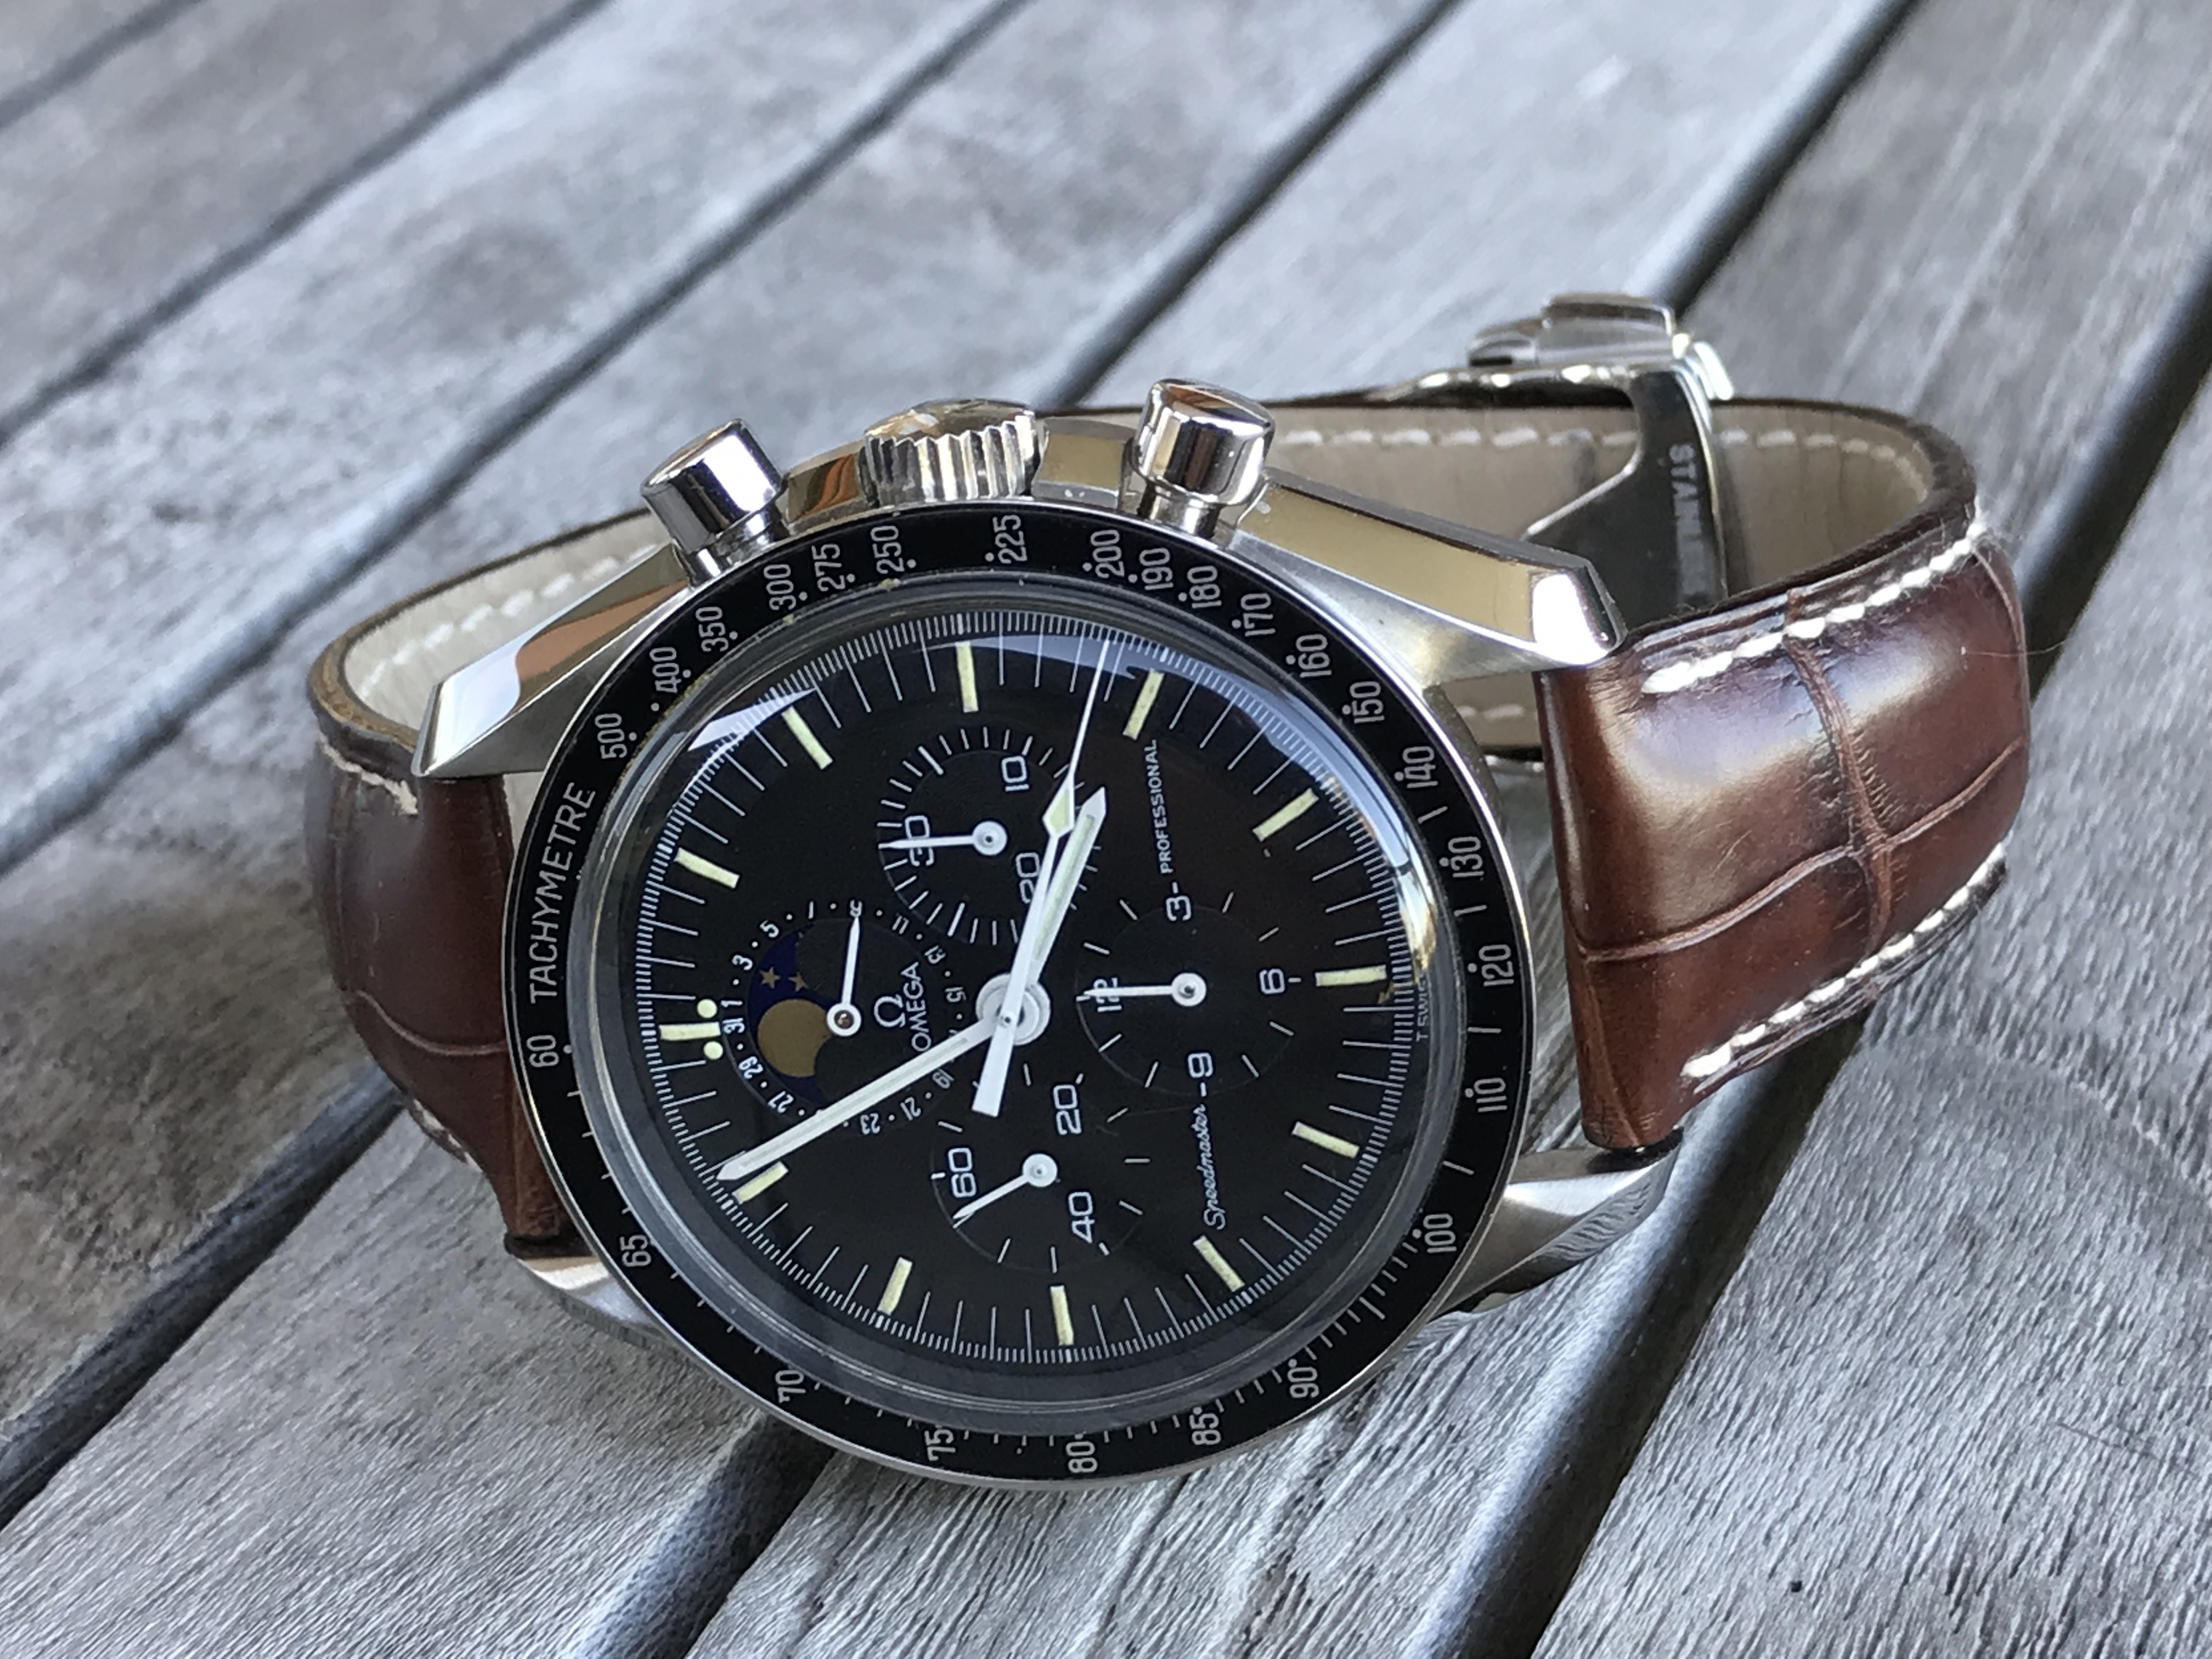 Racing Dark Brown Speedy Leather Watch Strap